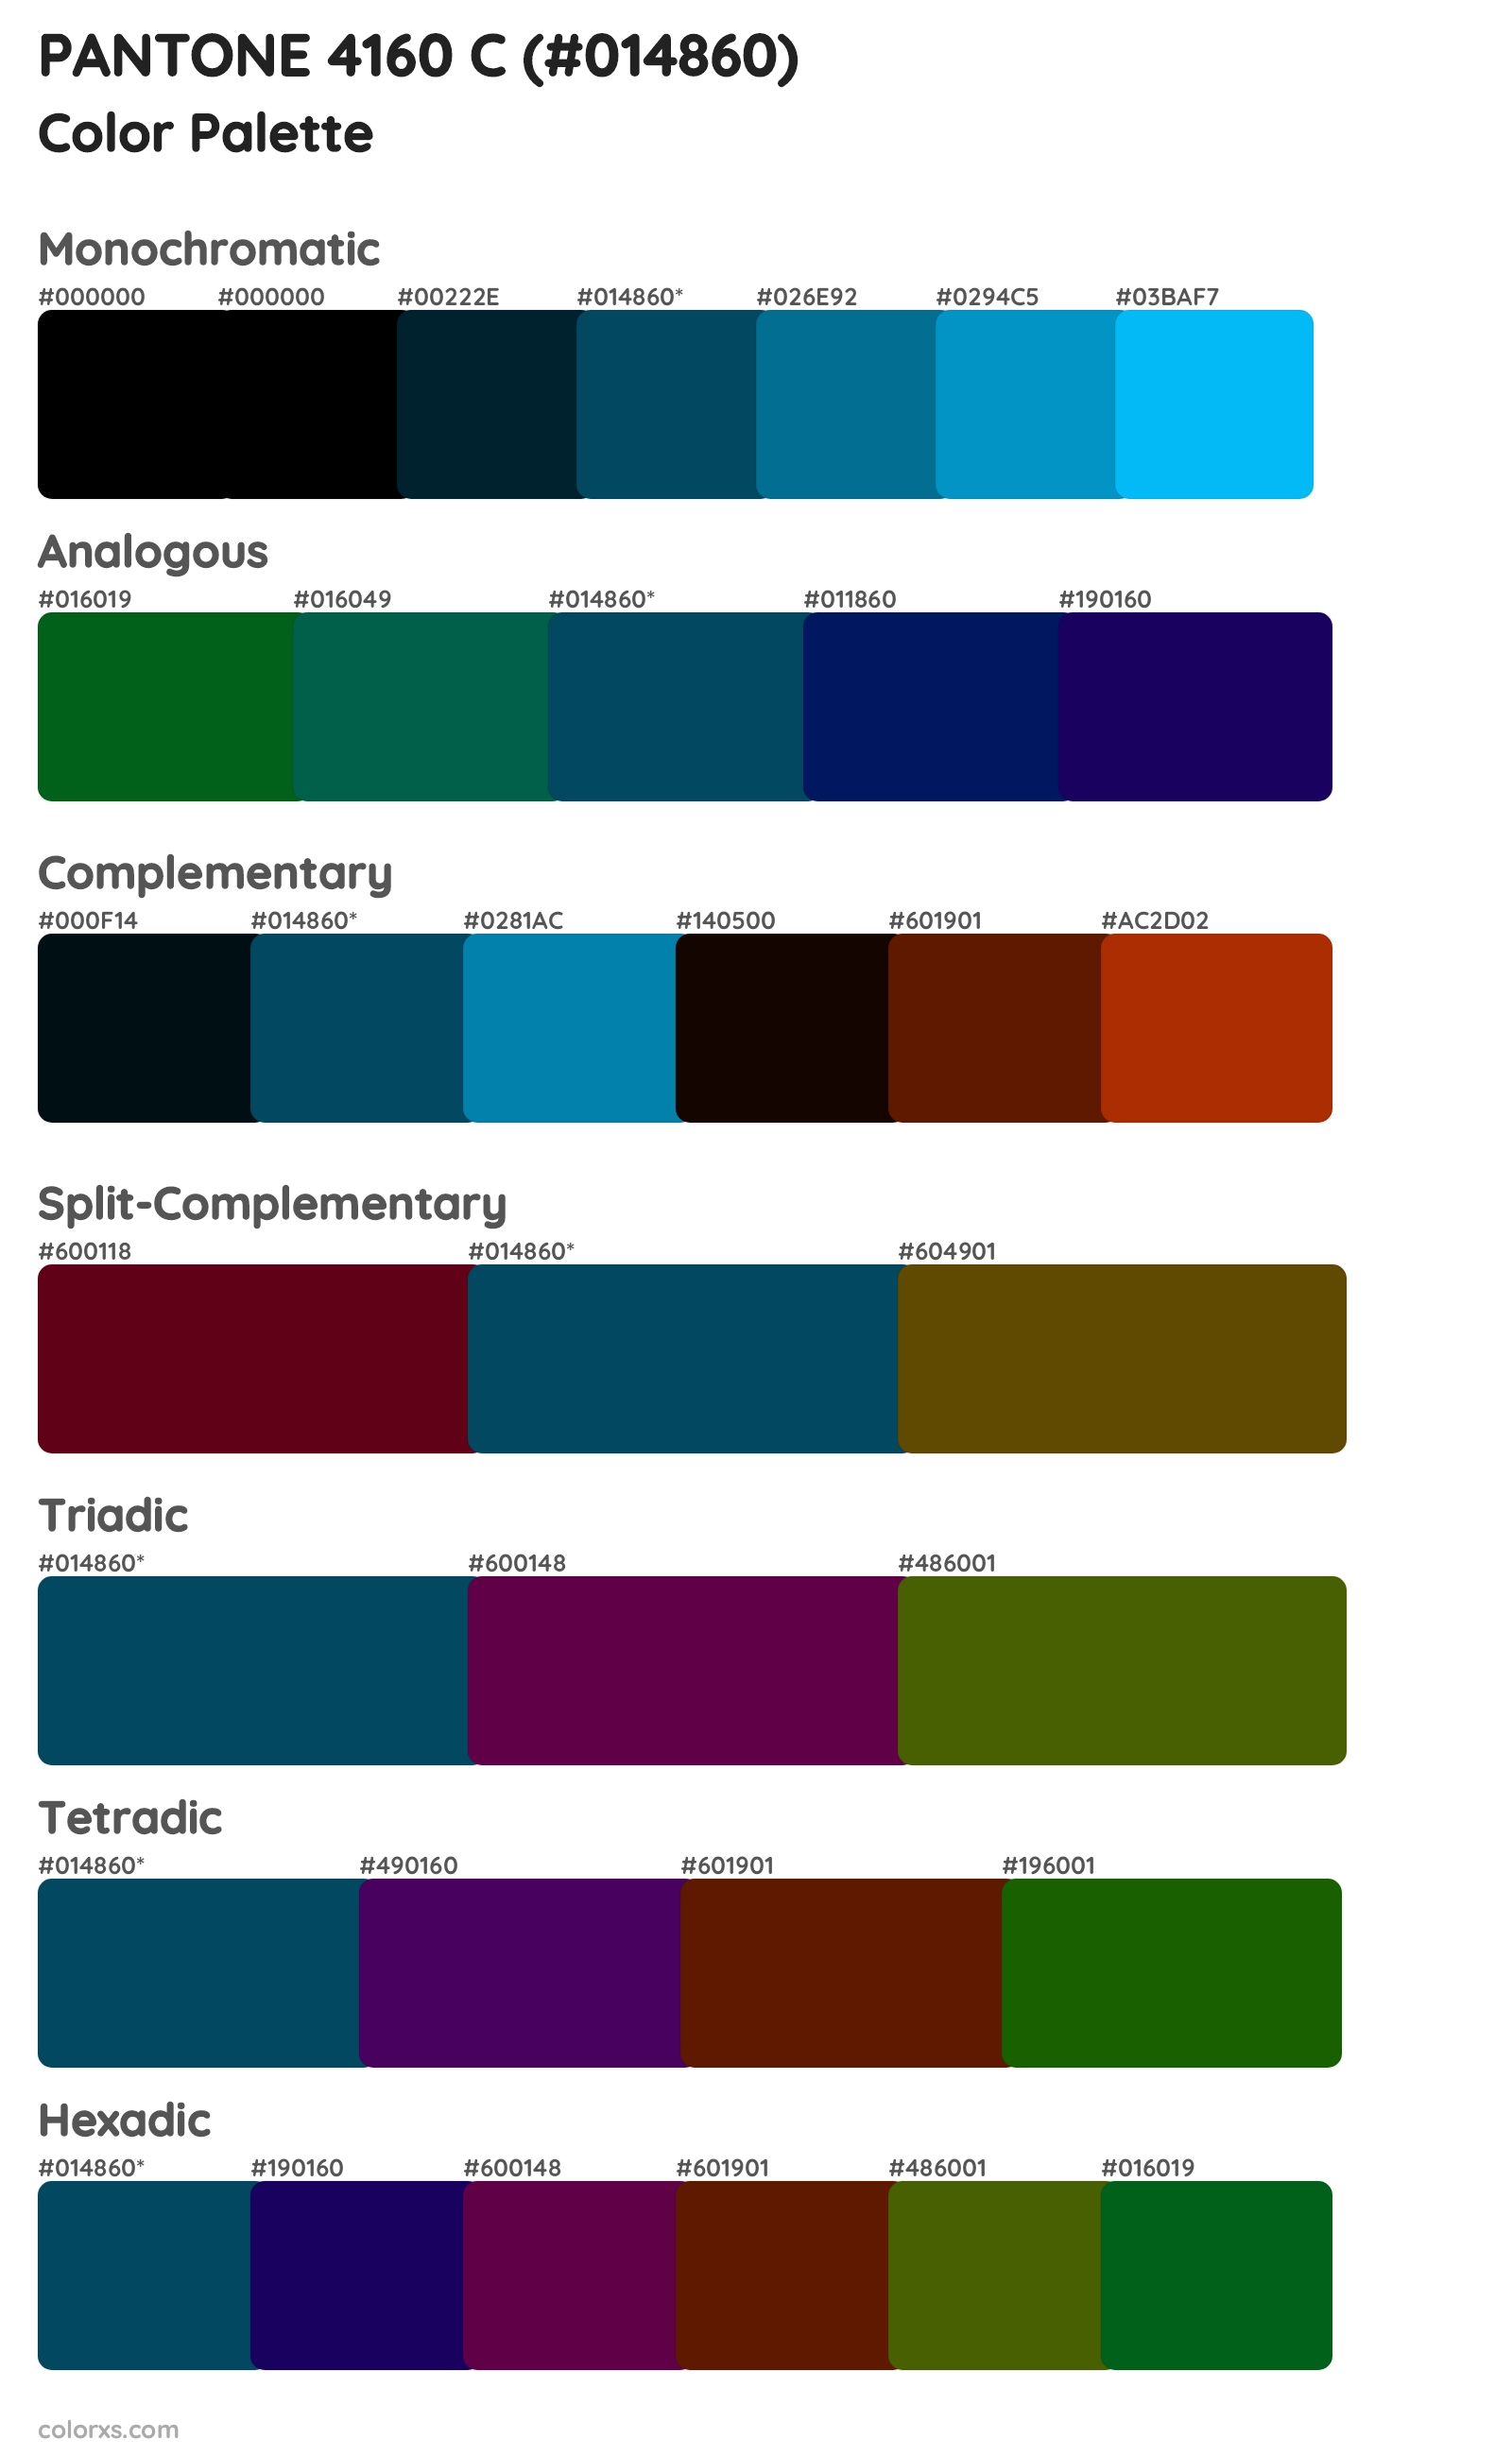 PANTONE 4160 C Color Scheme Palettes